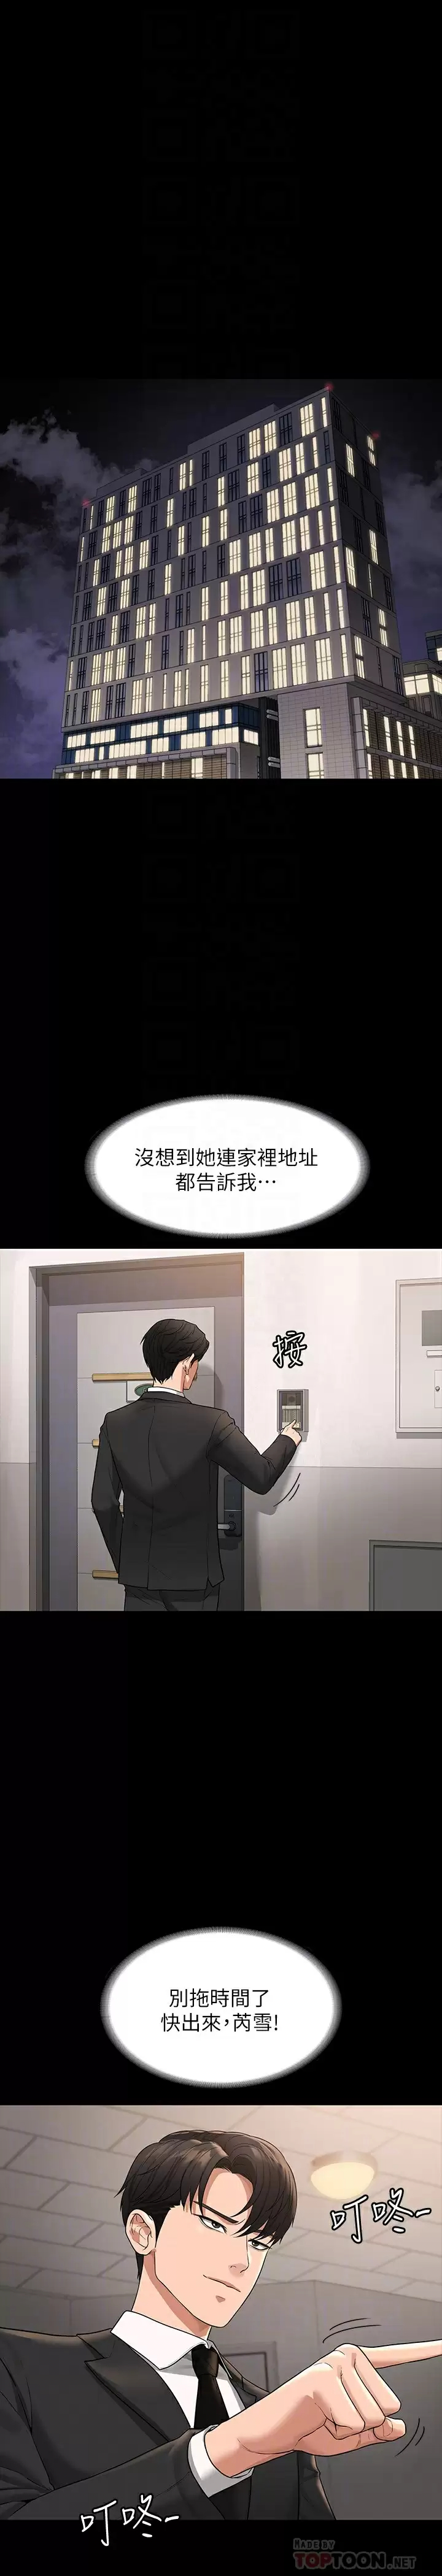 韩国污漫画 超級公務員 第35话 芮雪的胸部袒露无疑 4